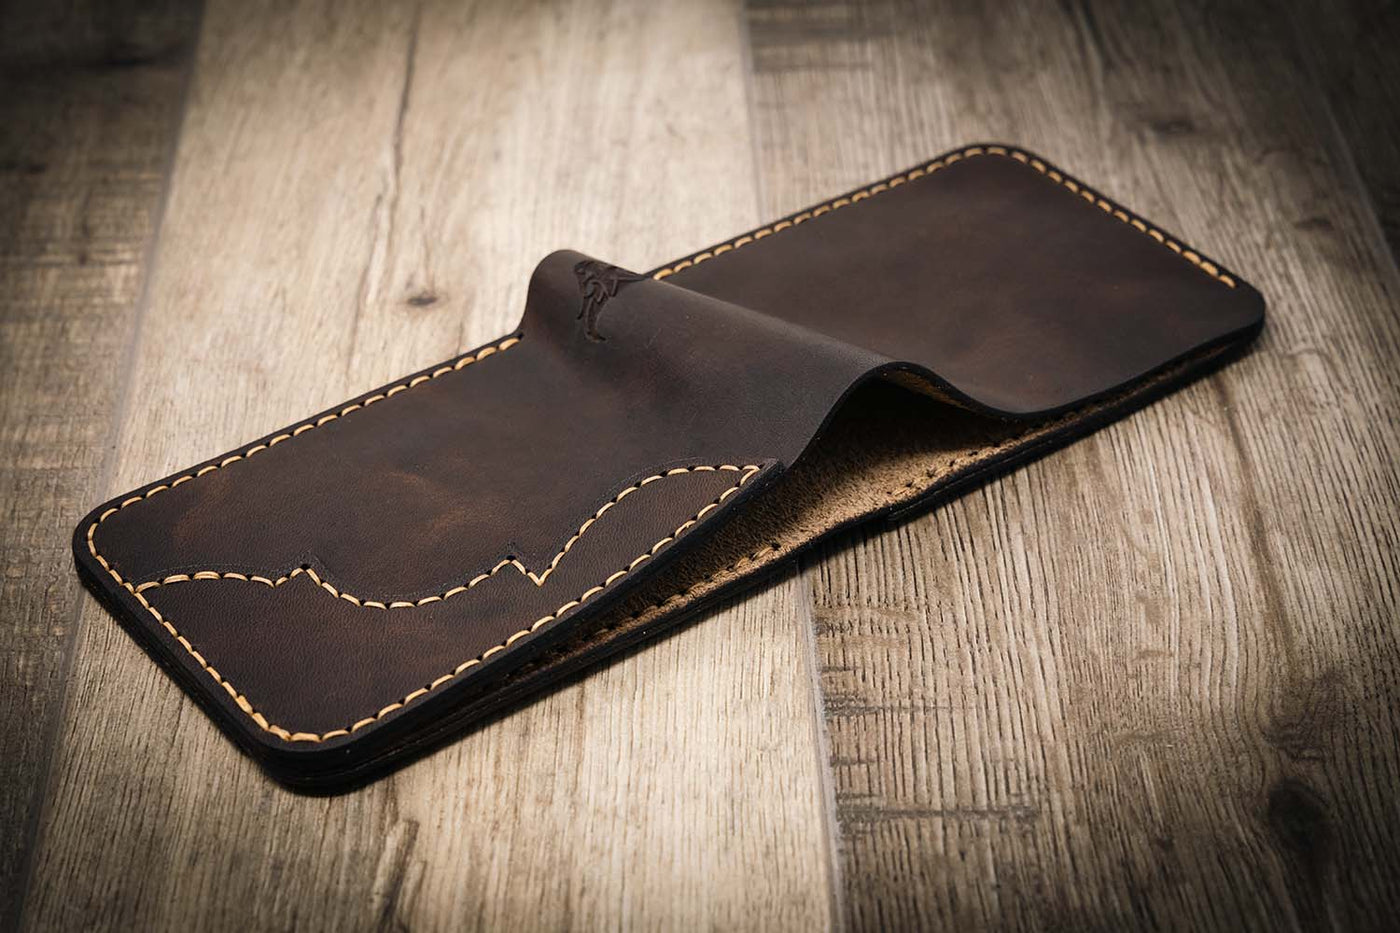 Western Bifold Men's Leather Wallet - The Rio Grande -  Walnut